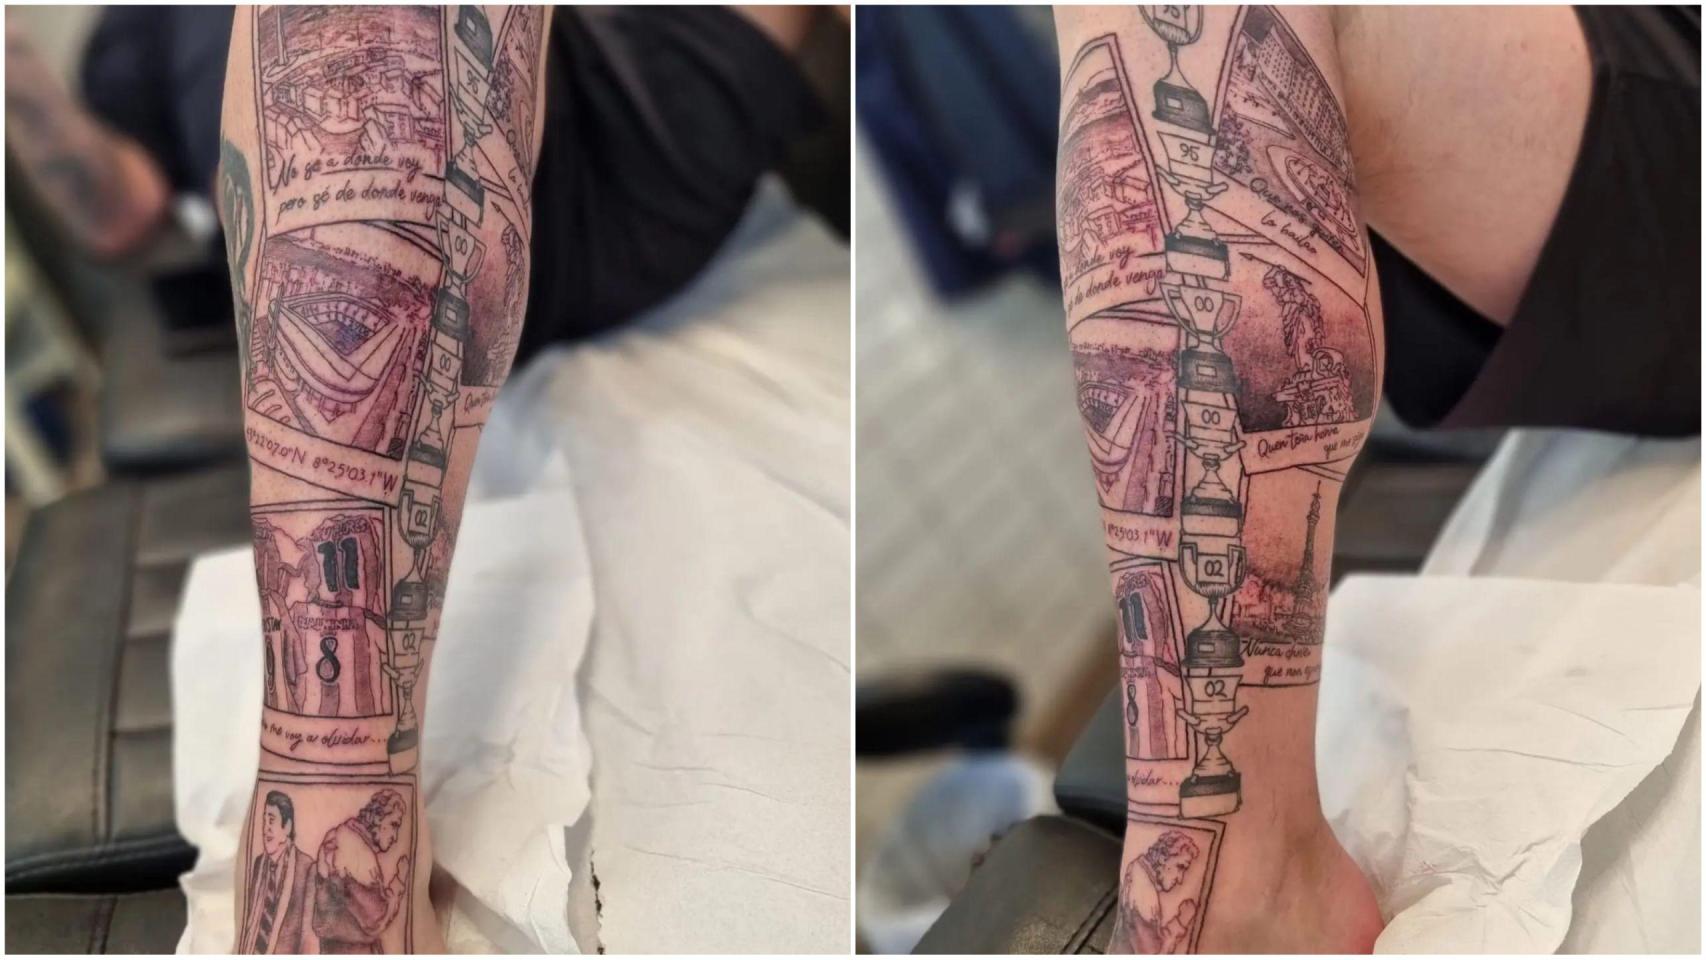 El tatuaje deportivista que arrasa en redes.